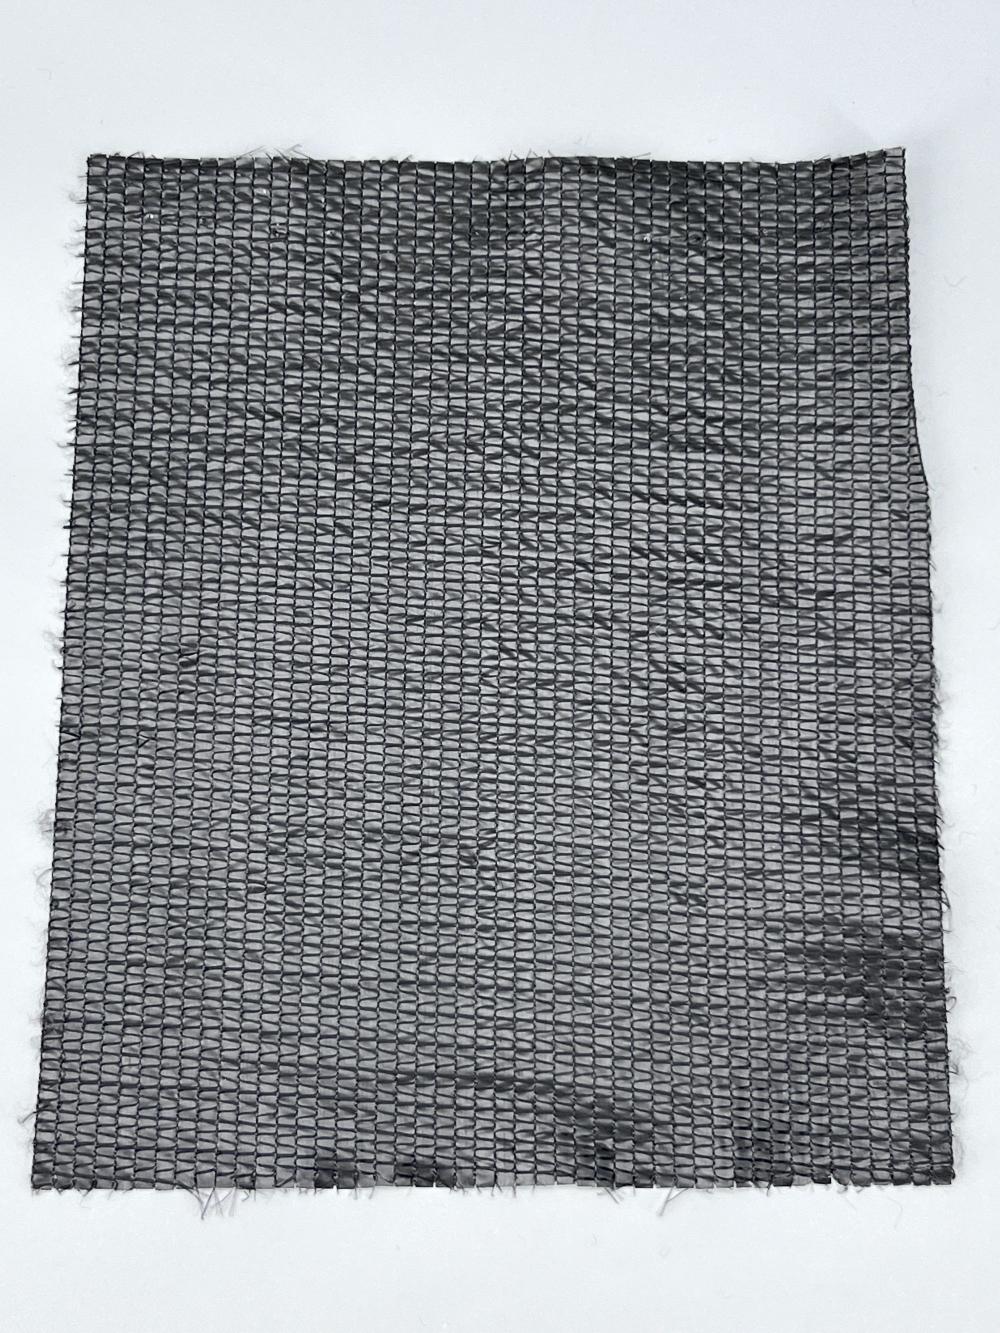  Aluminum Foil Shade Net